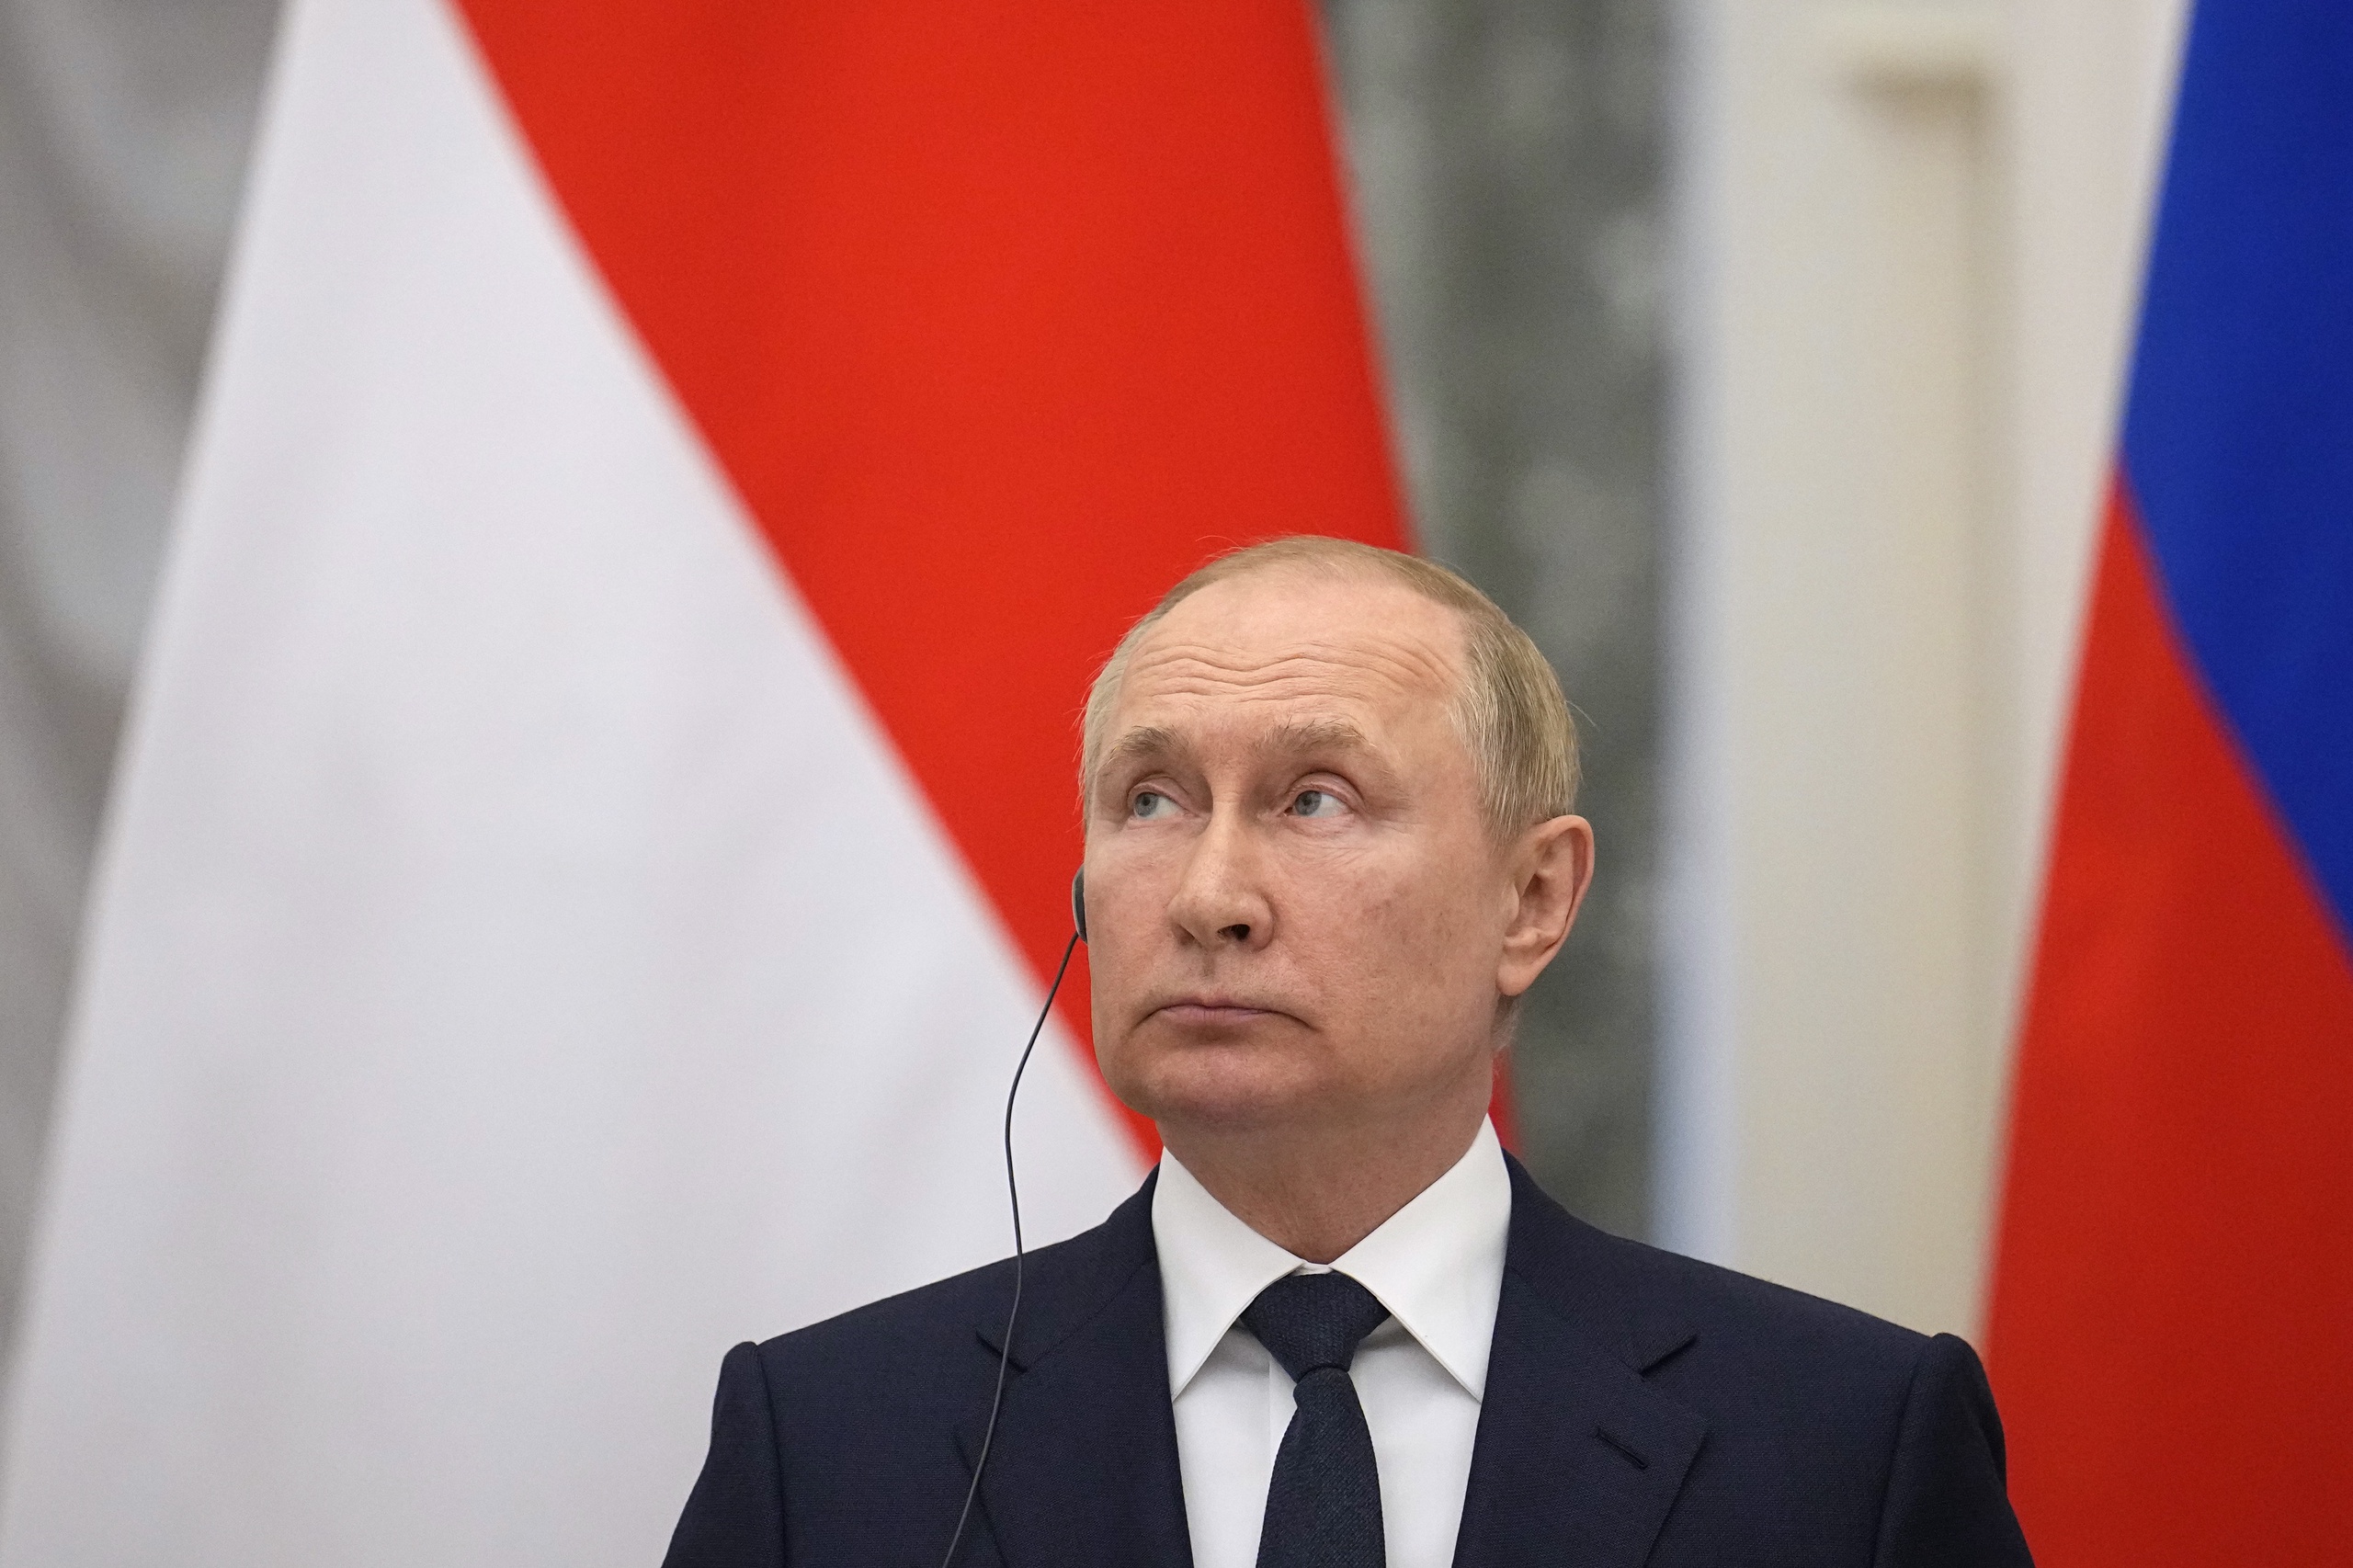 President Poetin zou hebben gezegd dat er een operationele pauze zou komen voor Russische troepen, maar over die uitspraak is twijfel.